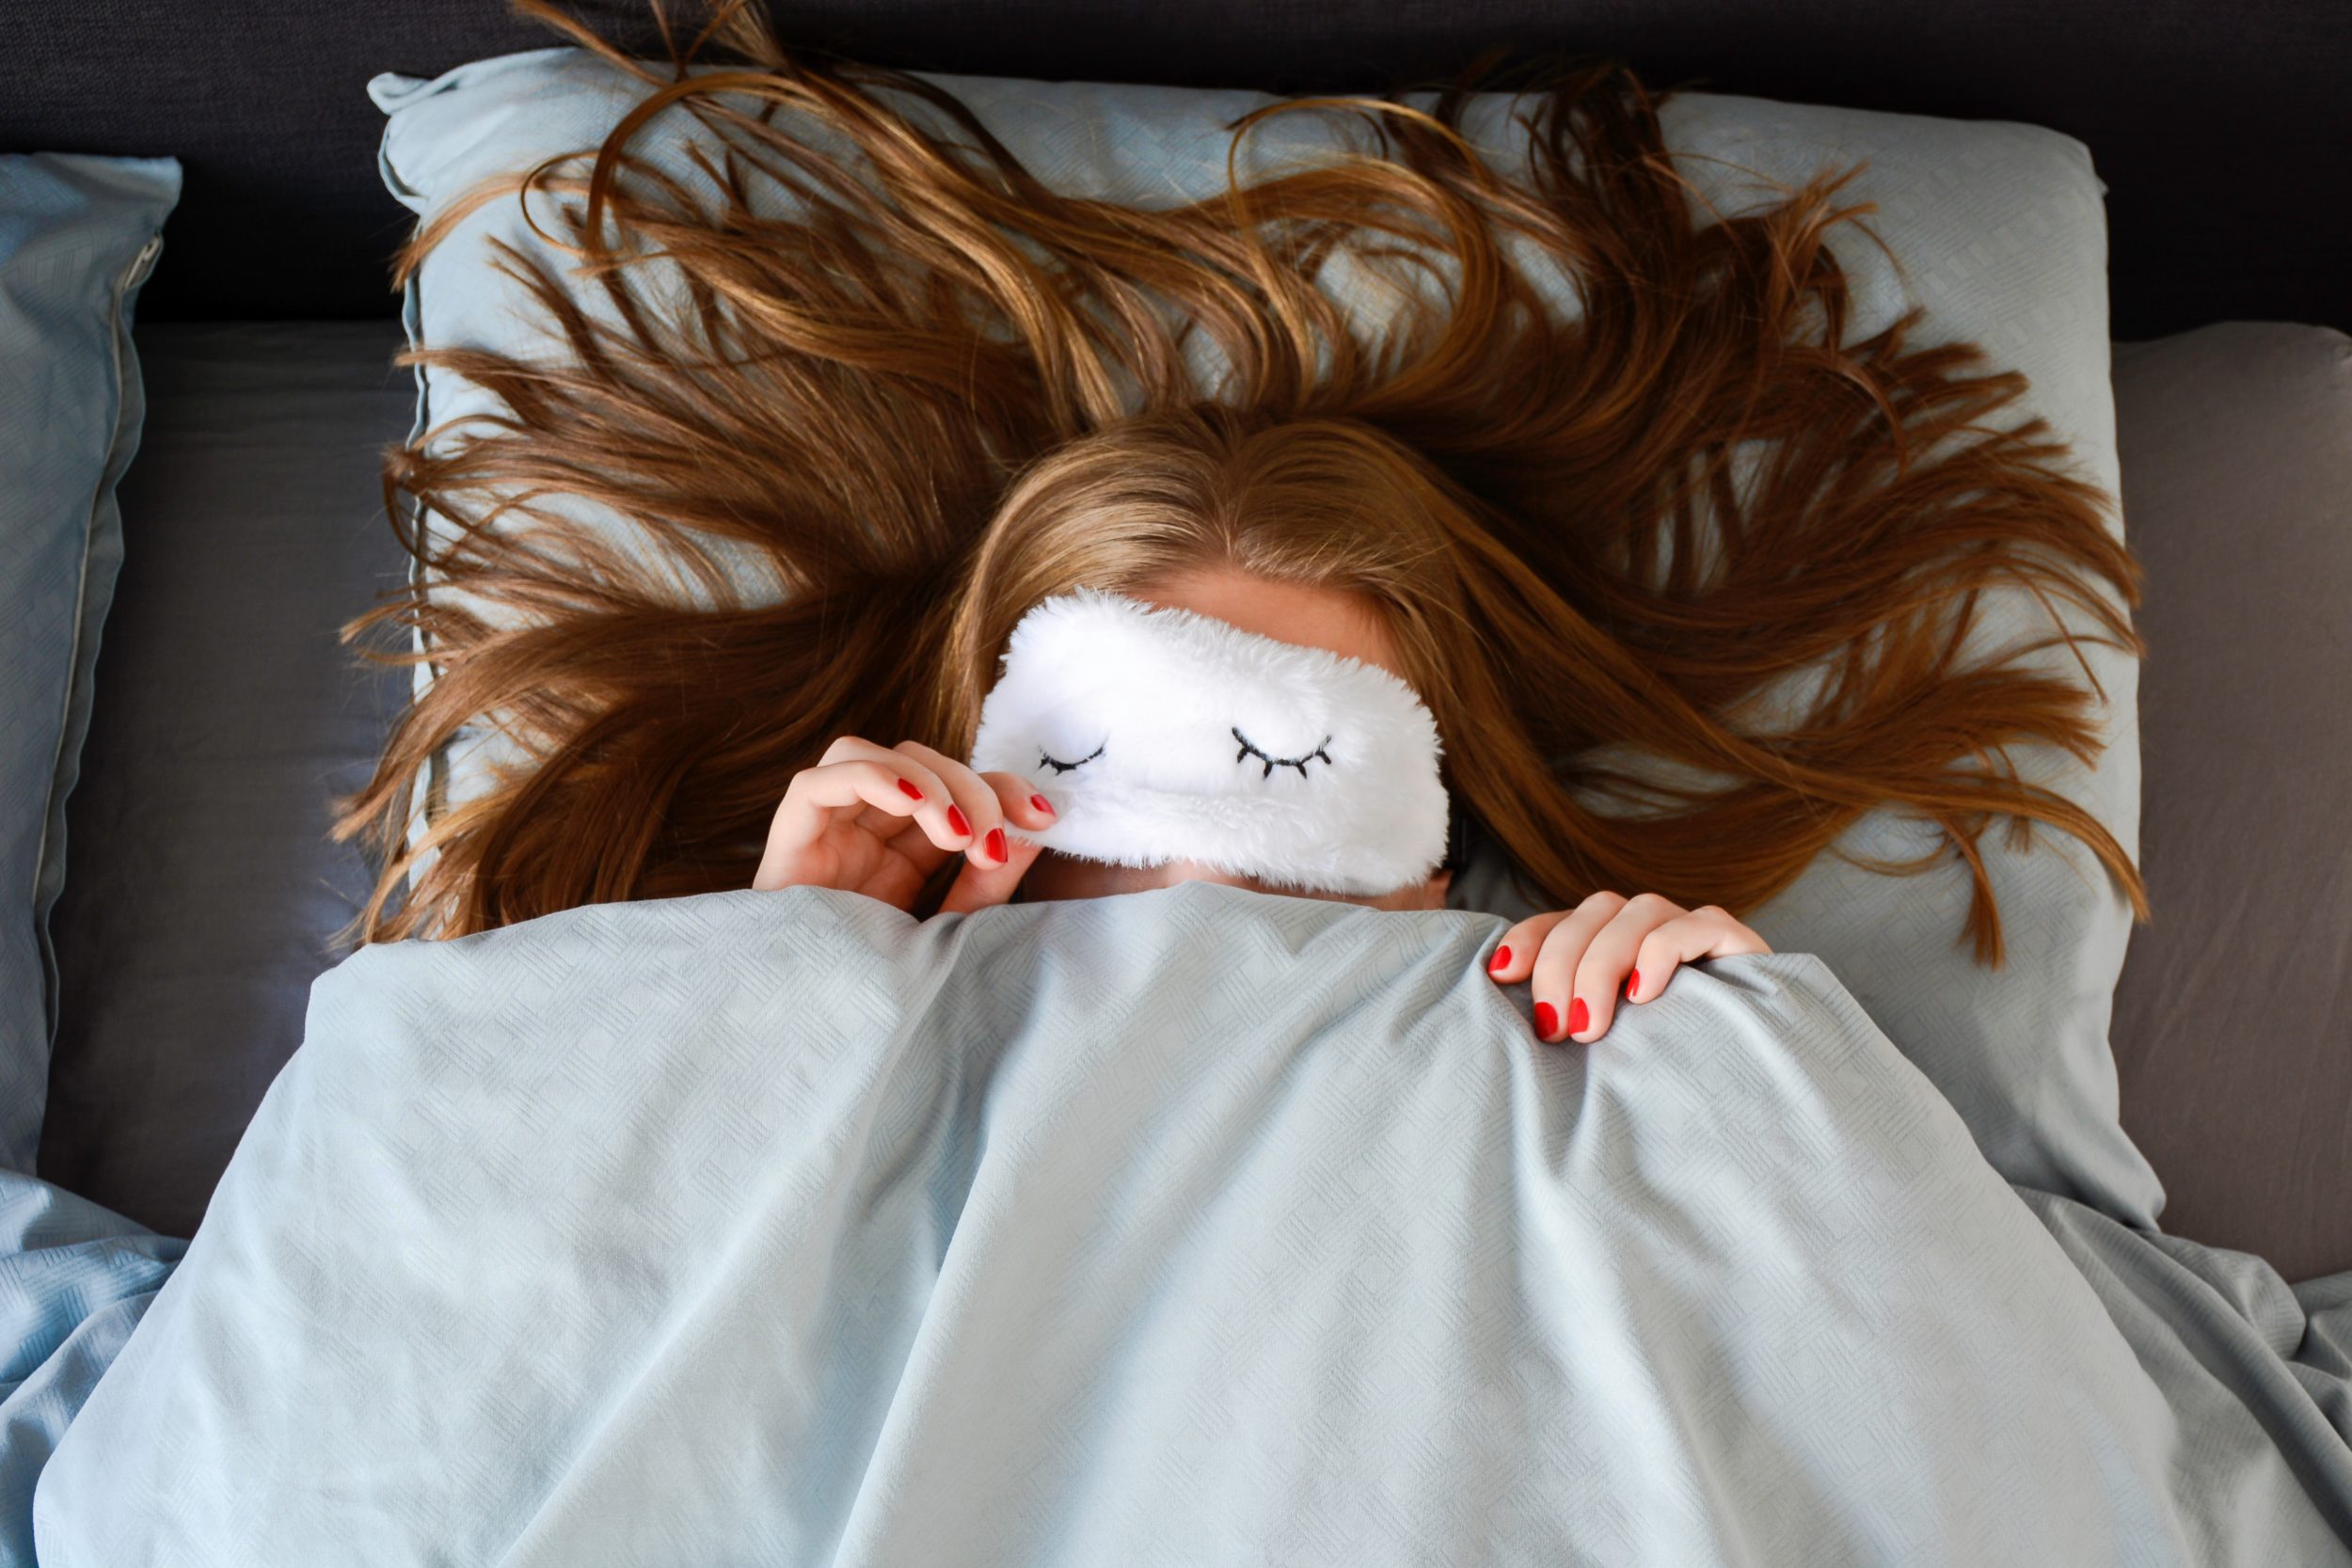 Les 5 meilleurs astuces pour réveiller un gros dormeur 95